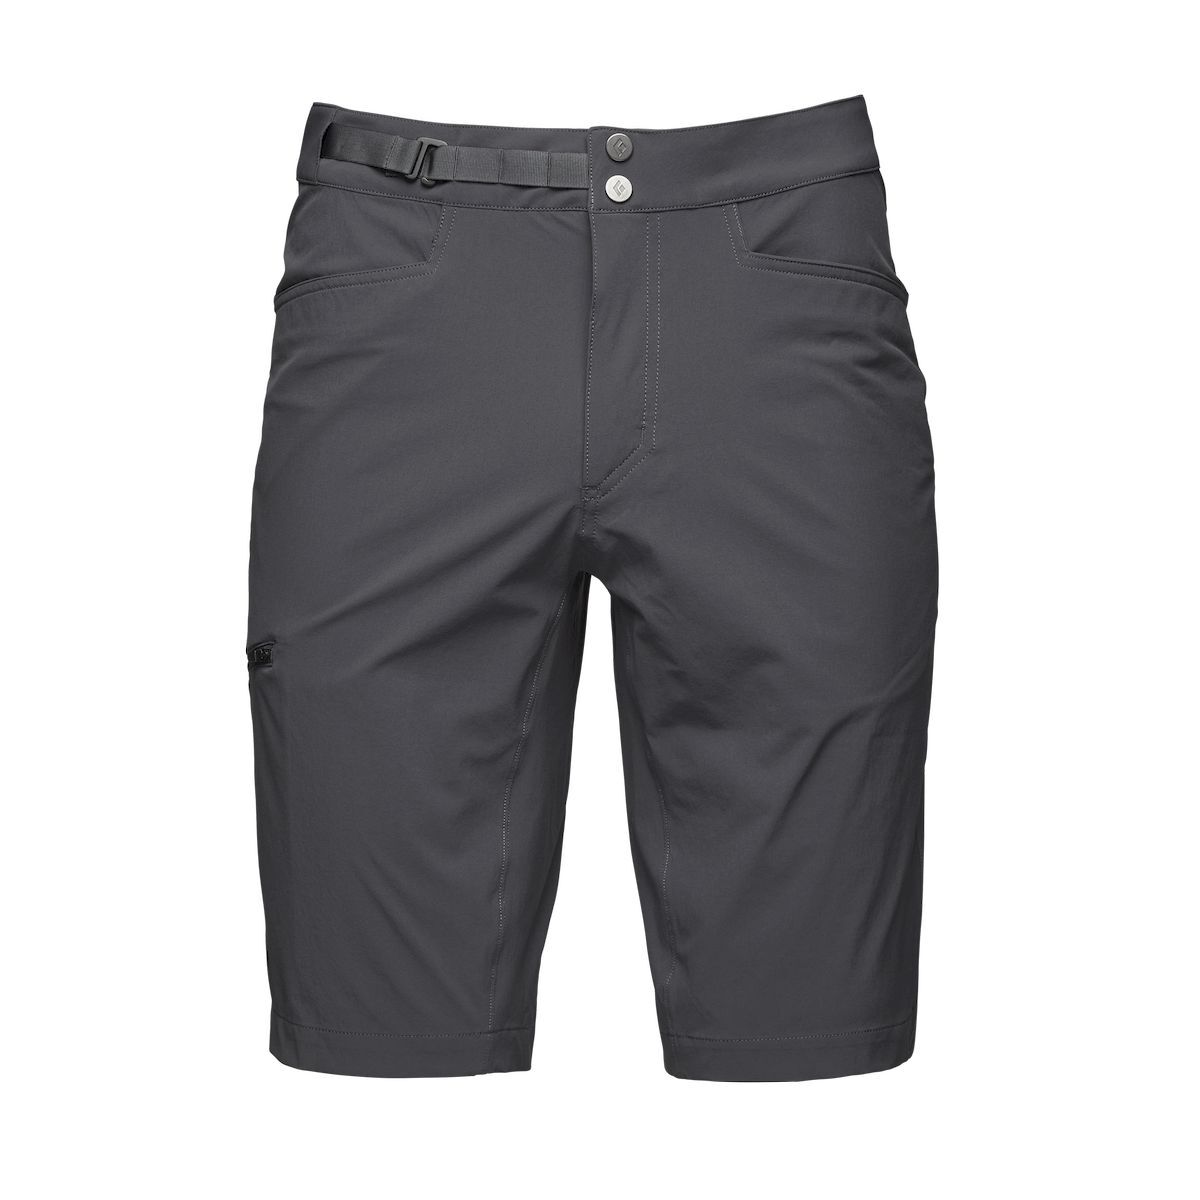 Black Diamond Valley Shorts - Pantalones cortos de escalada - Hombre